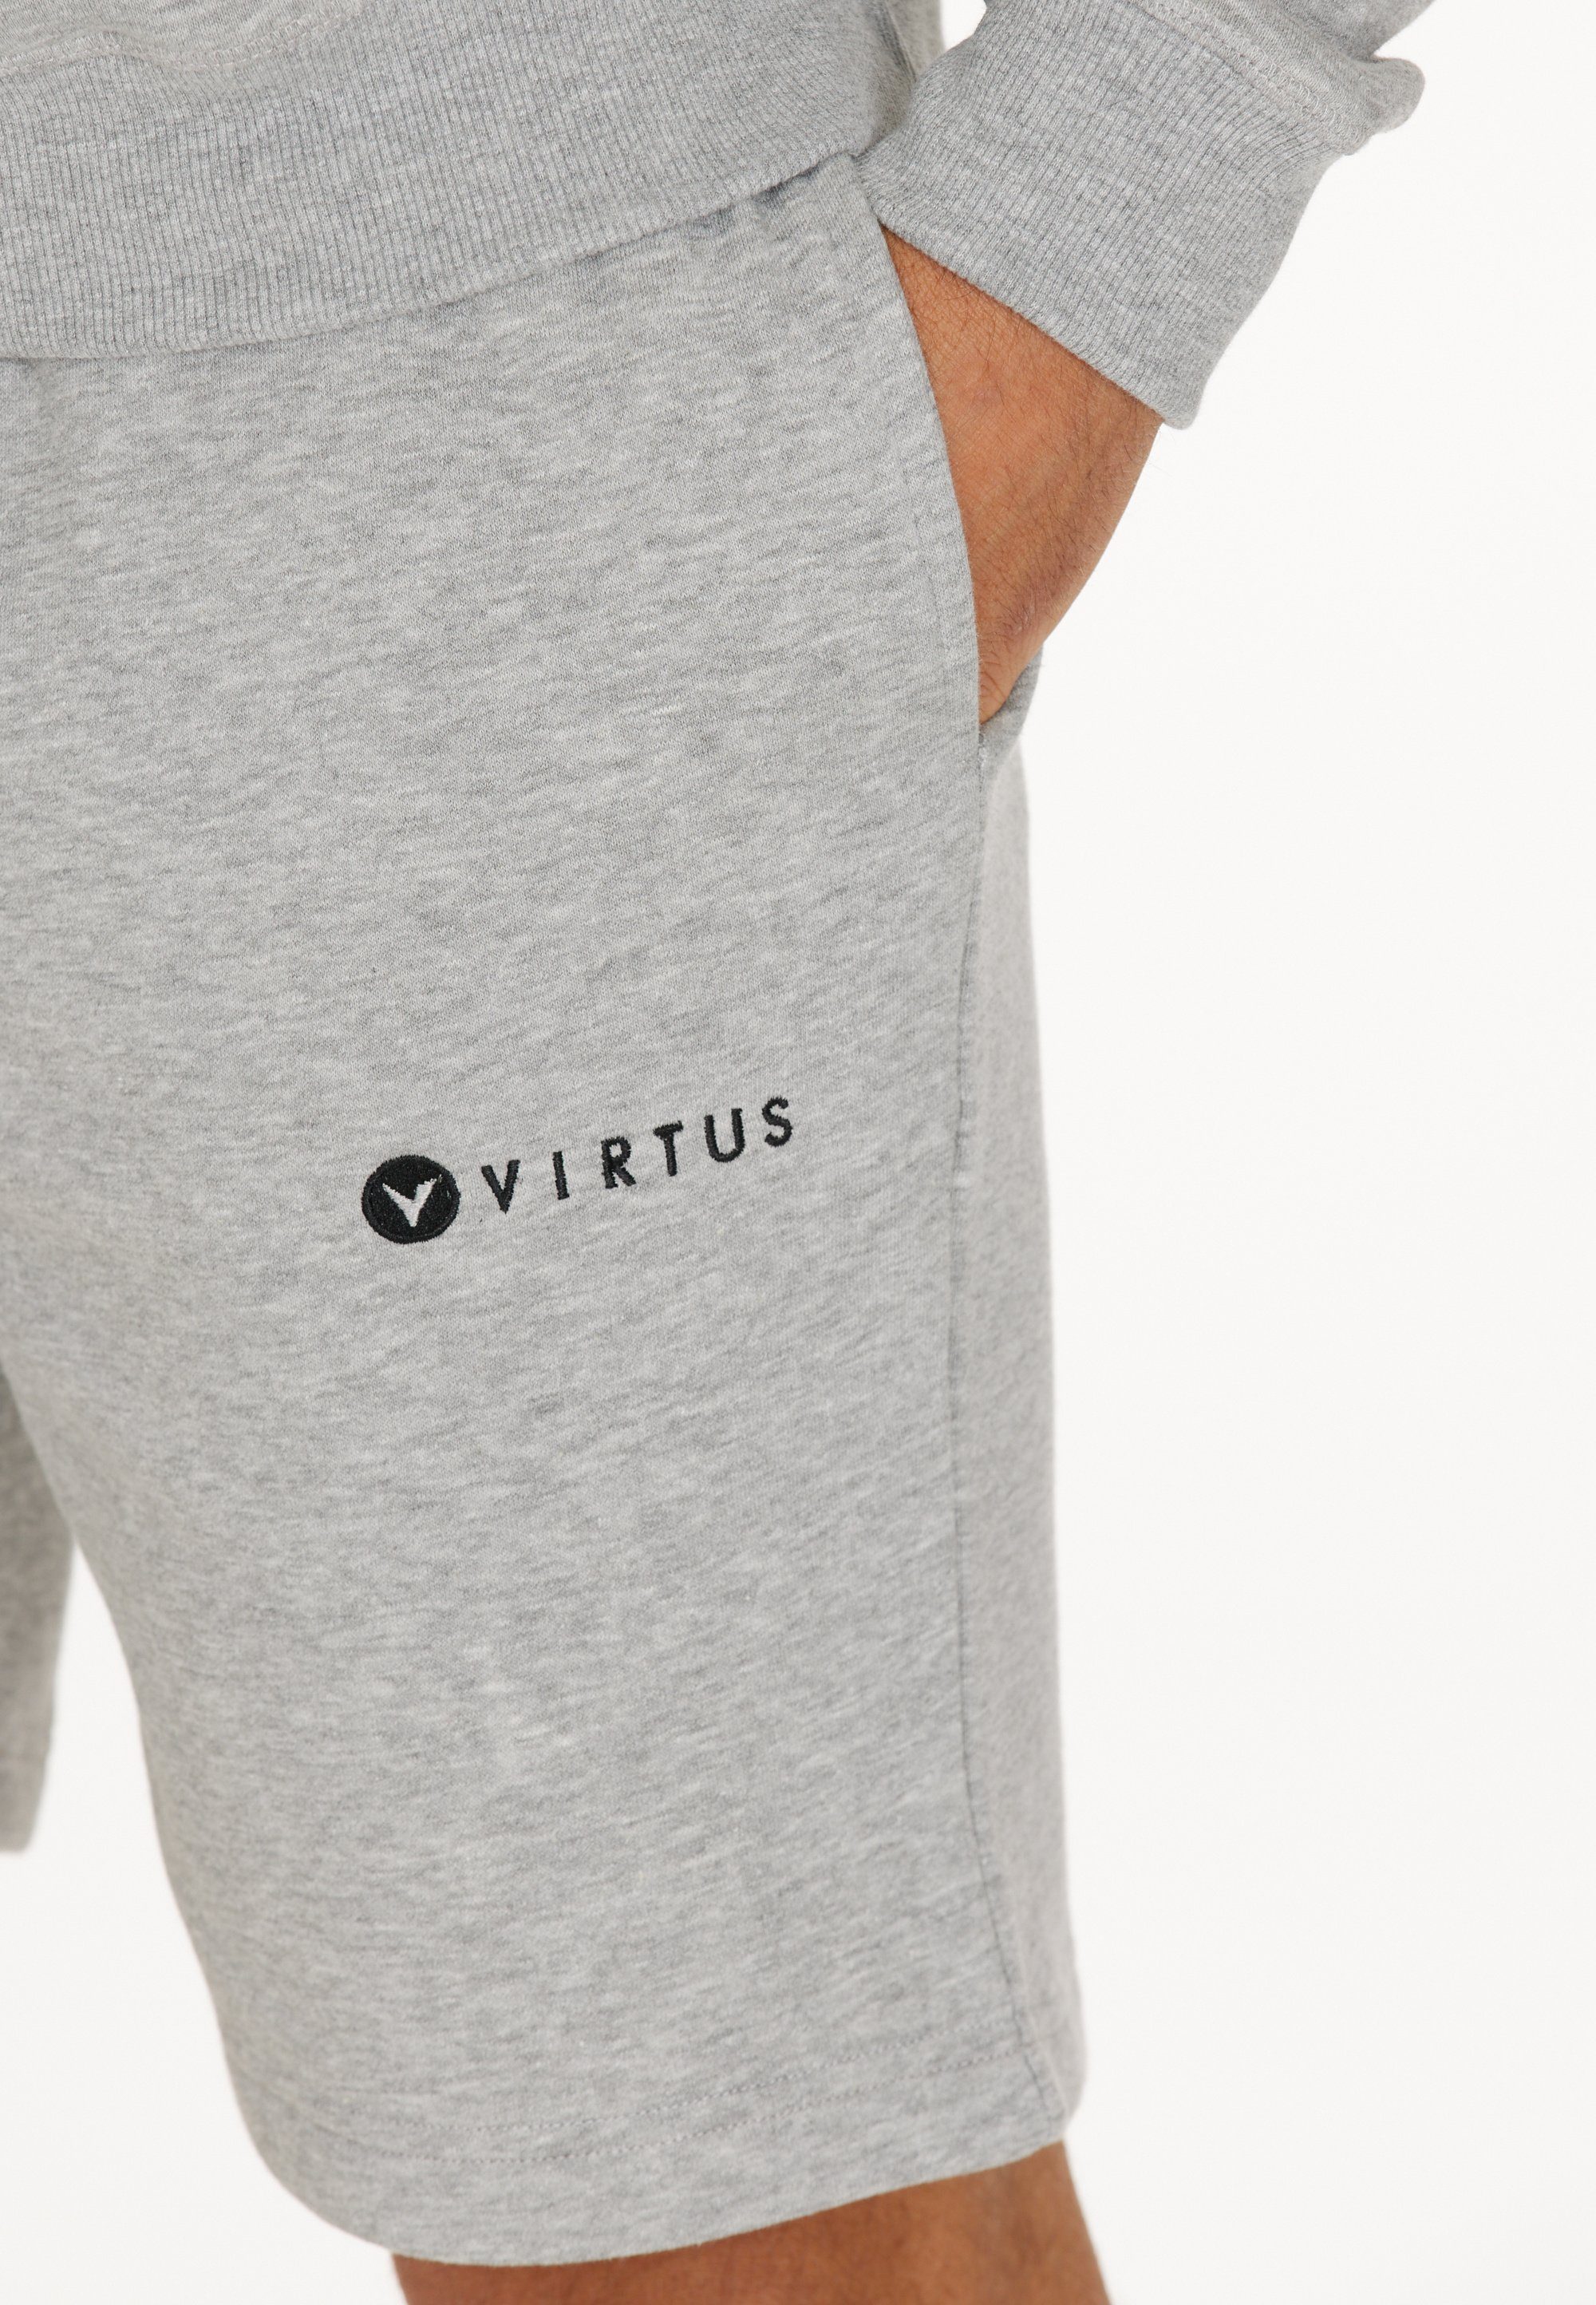 in Shorts Design Virtus Kritow sportlichem grau-meliert